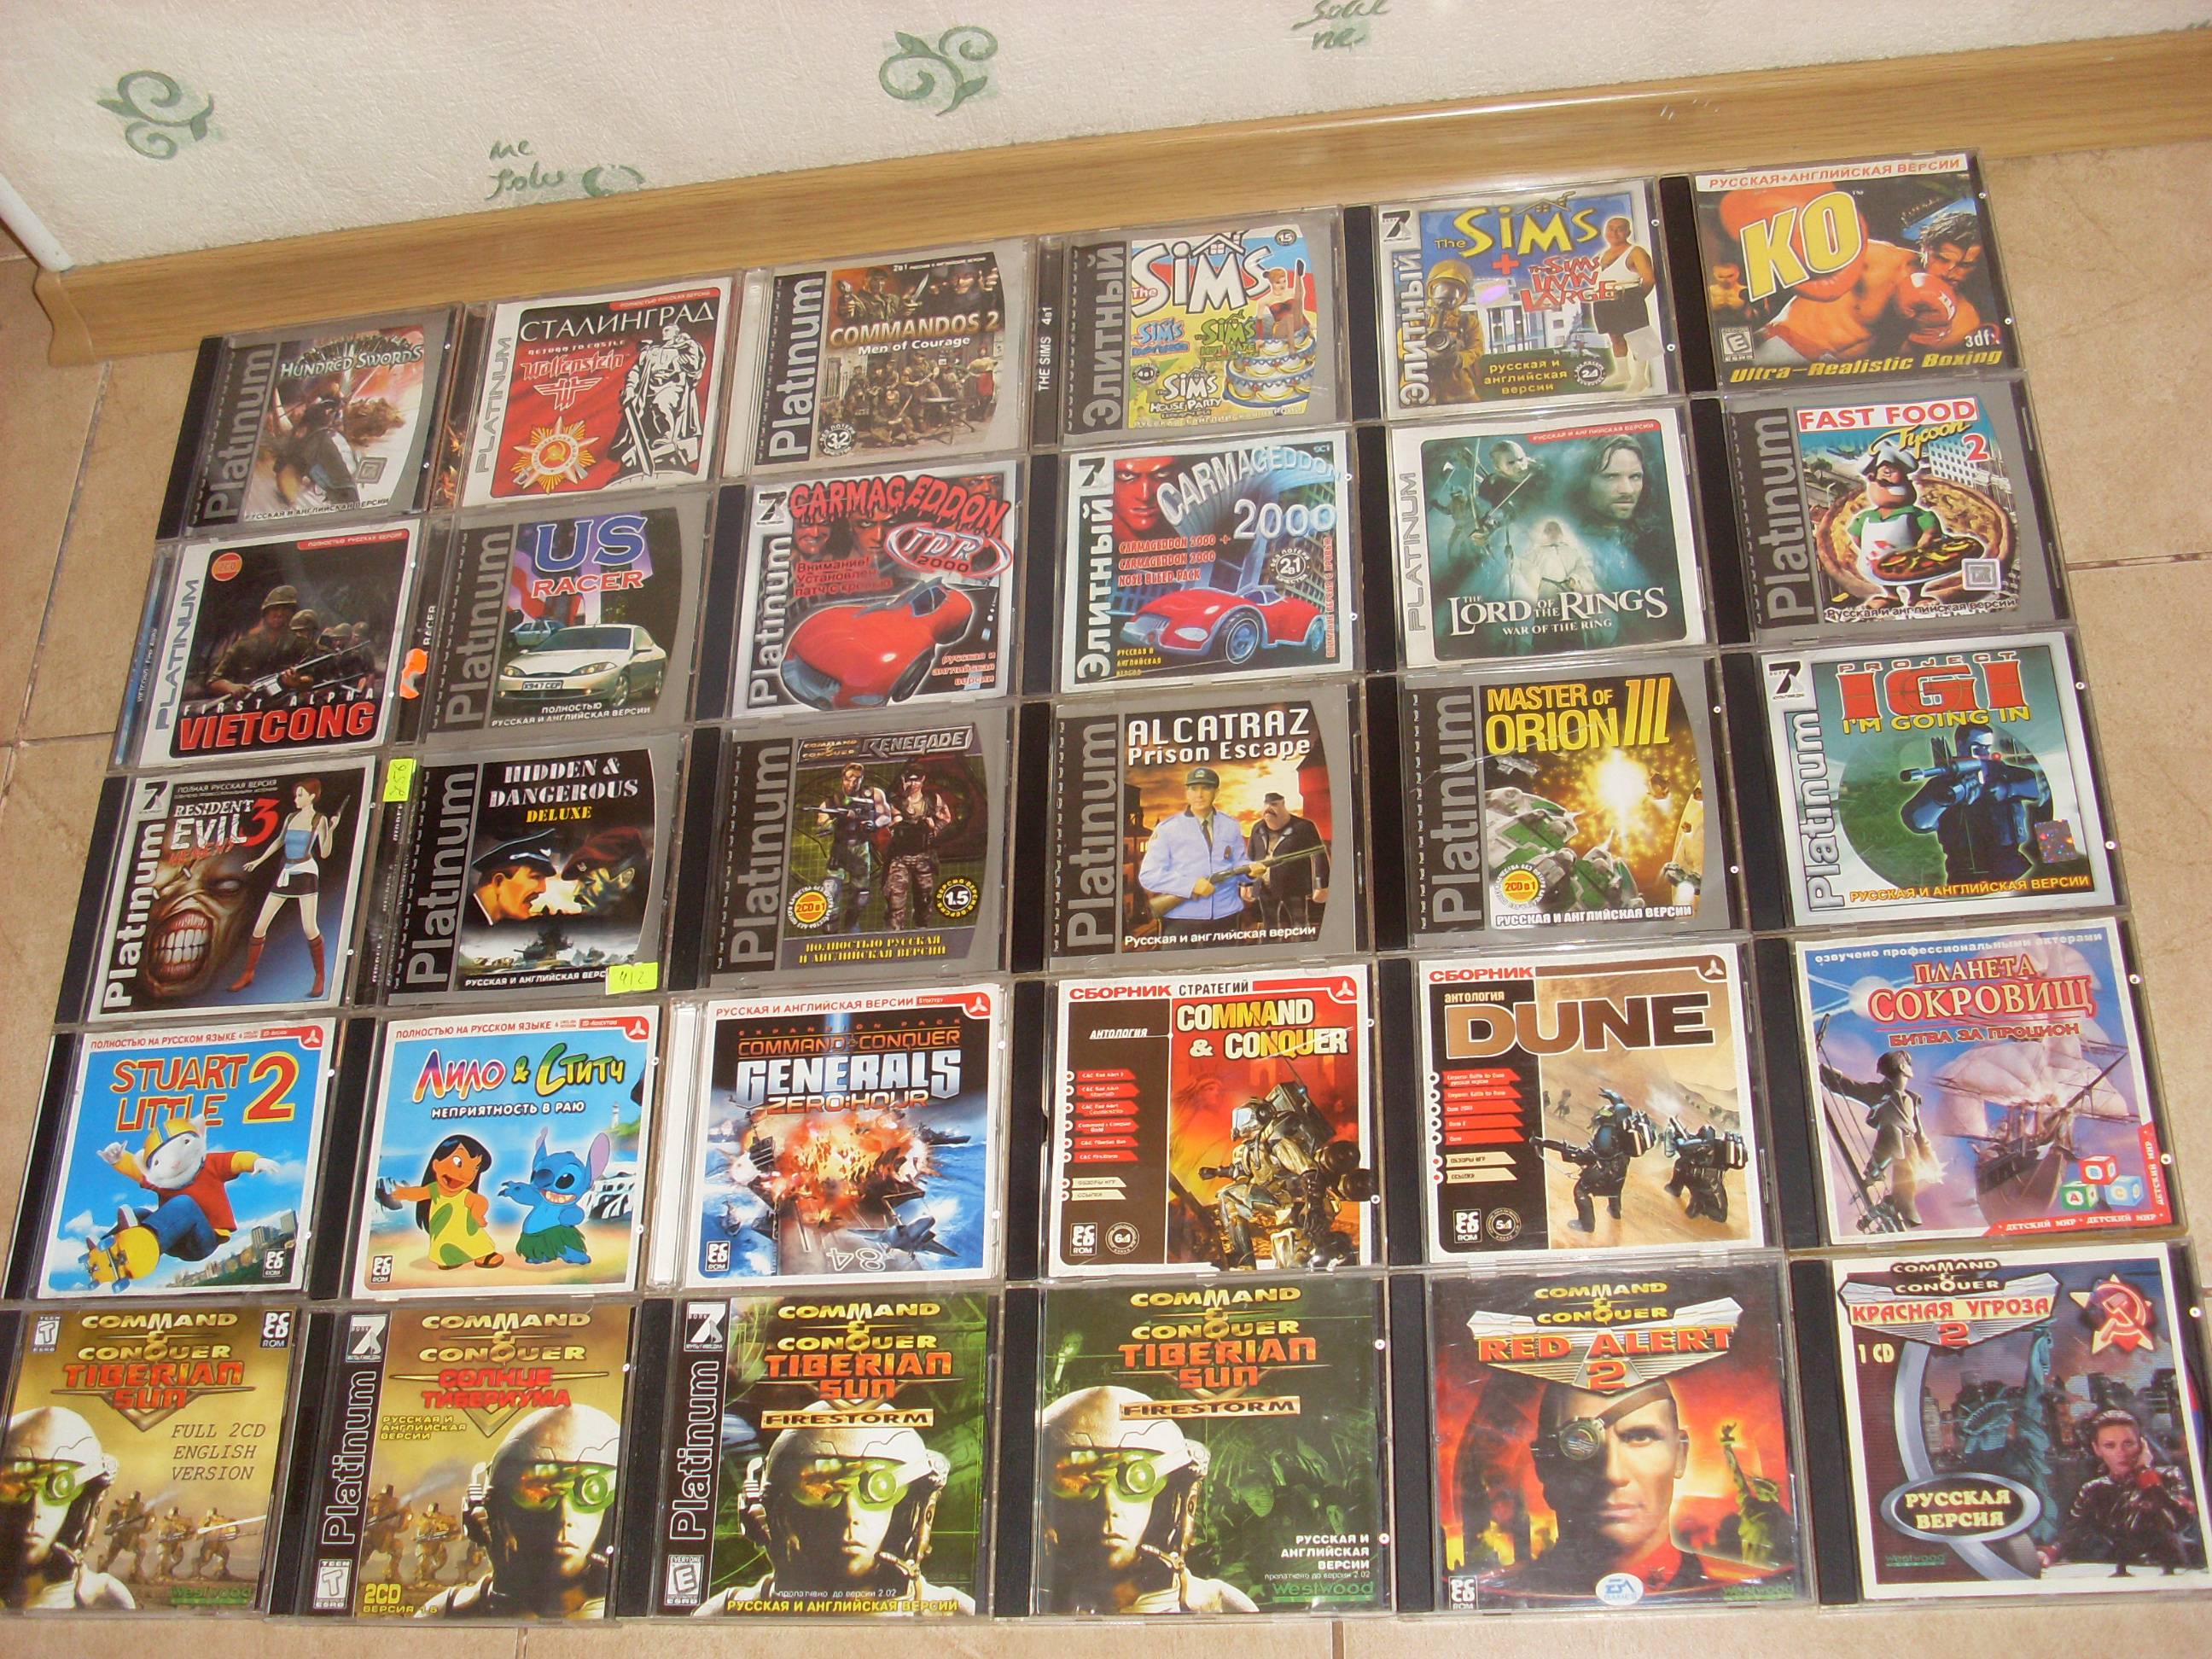 Сборник старых игр. Коллекция старых игр. Коробки от дисков старых игр.